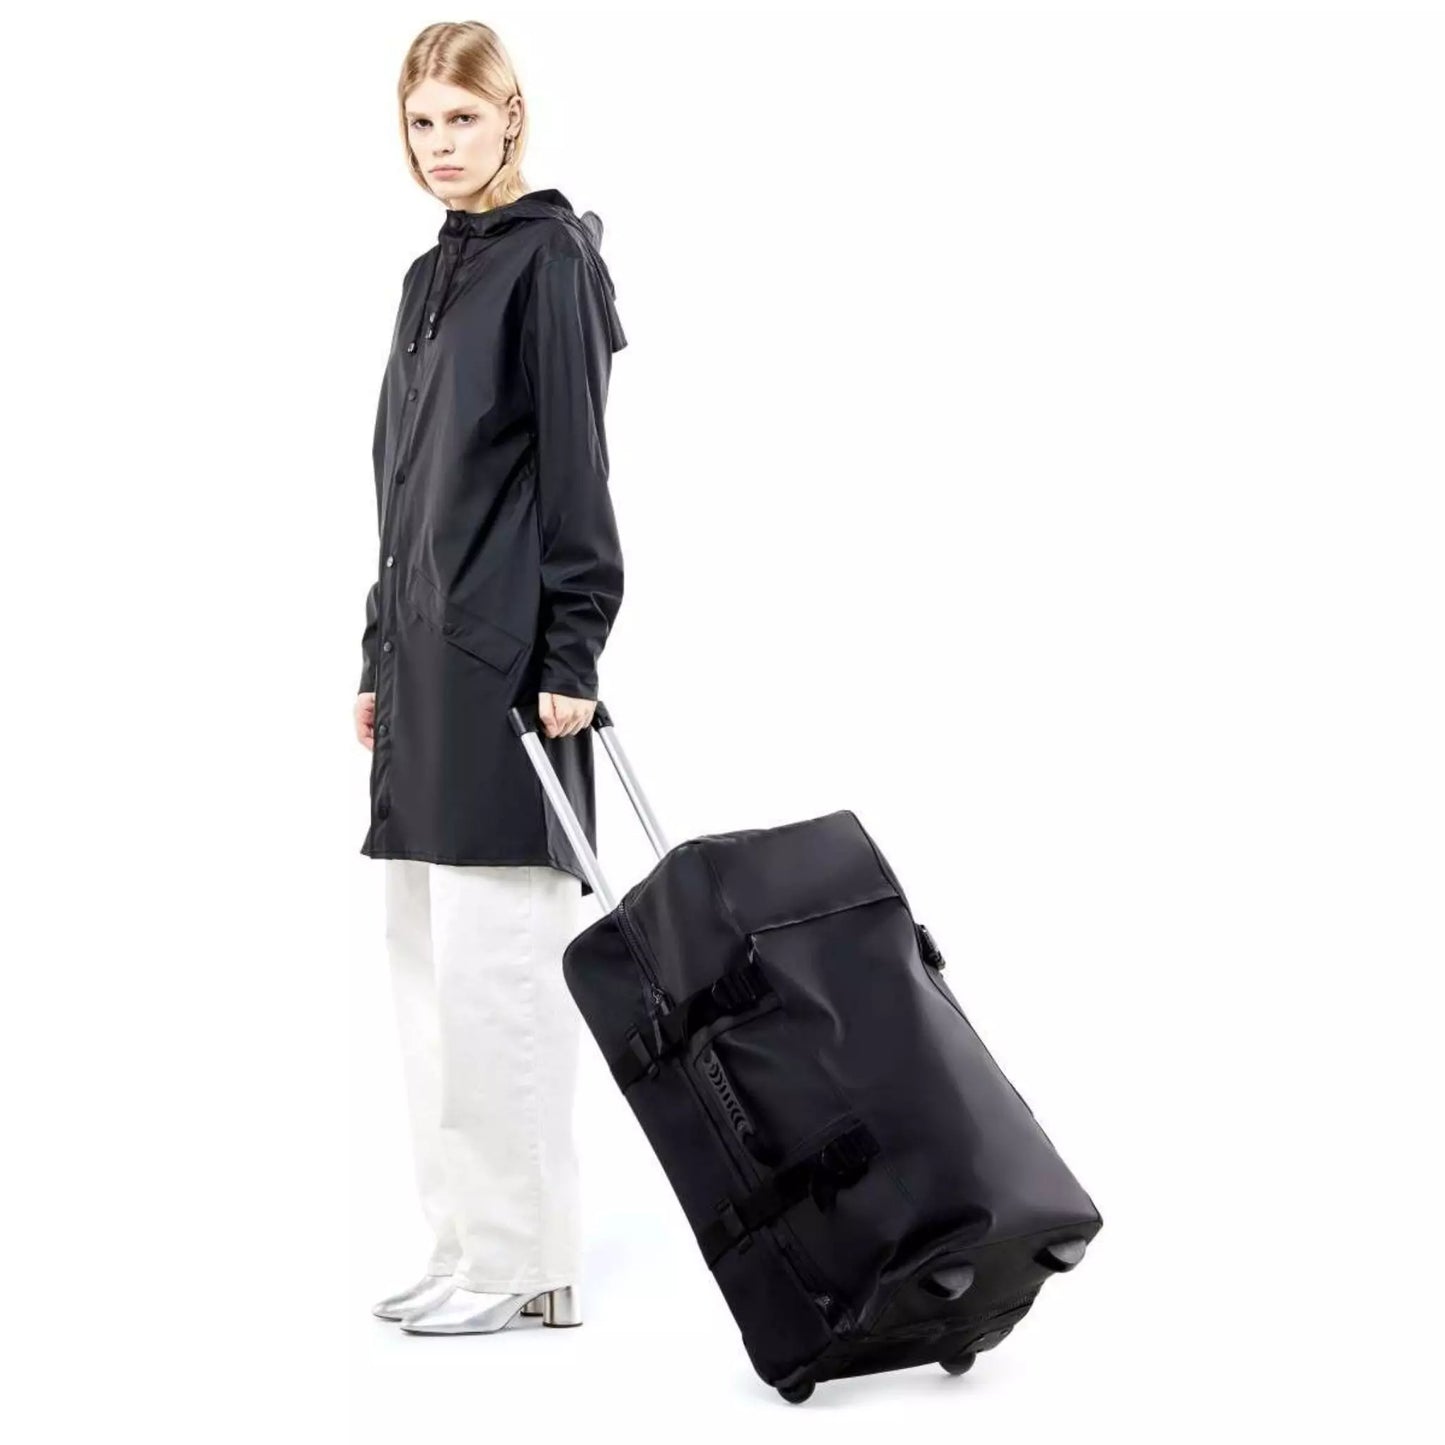 Rains waterproof travel bag large black held by a woman